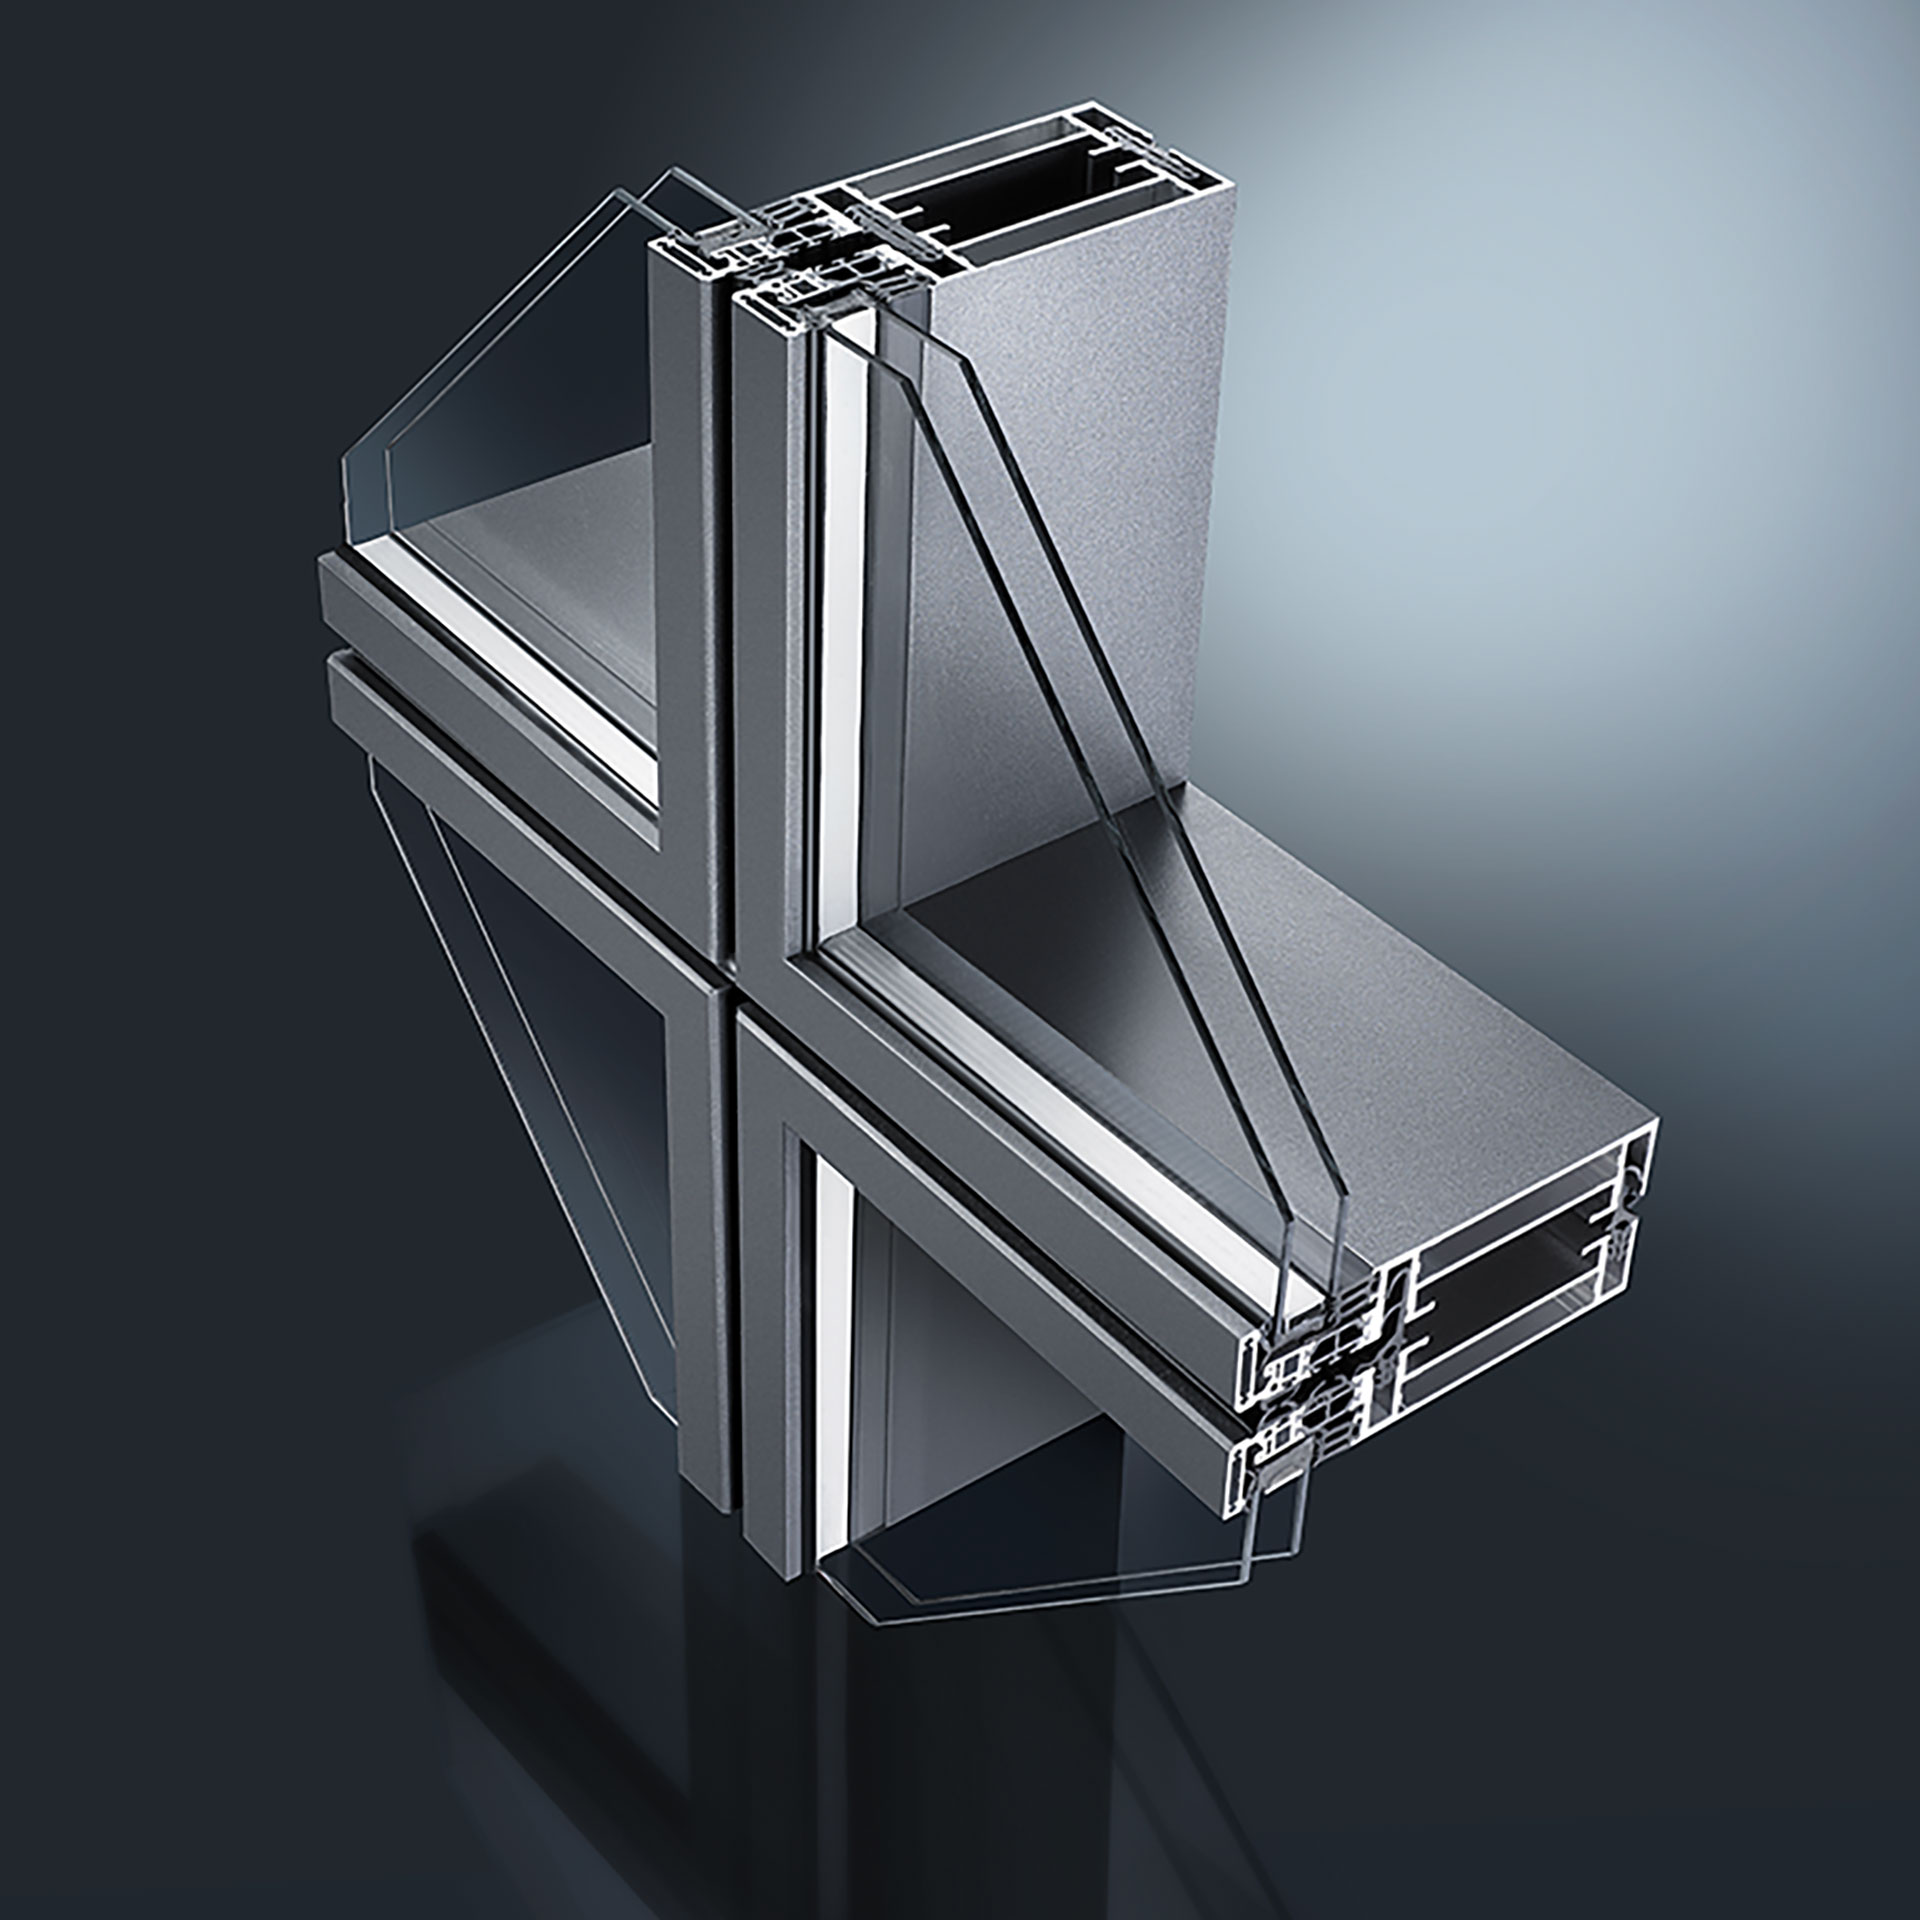 Profilserie zur Herstellung von Fassaden-Konstruktionen aus stranggepressten Aluminiumprofilen. Als Sonderkonstruktionen EF68+ für Objektlösungen mit optimierten Isolatoren und Dichtungen zur Aufnahme von Glasstärken bis zu 52 mm.